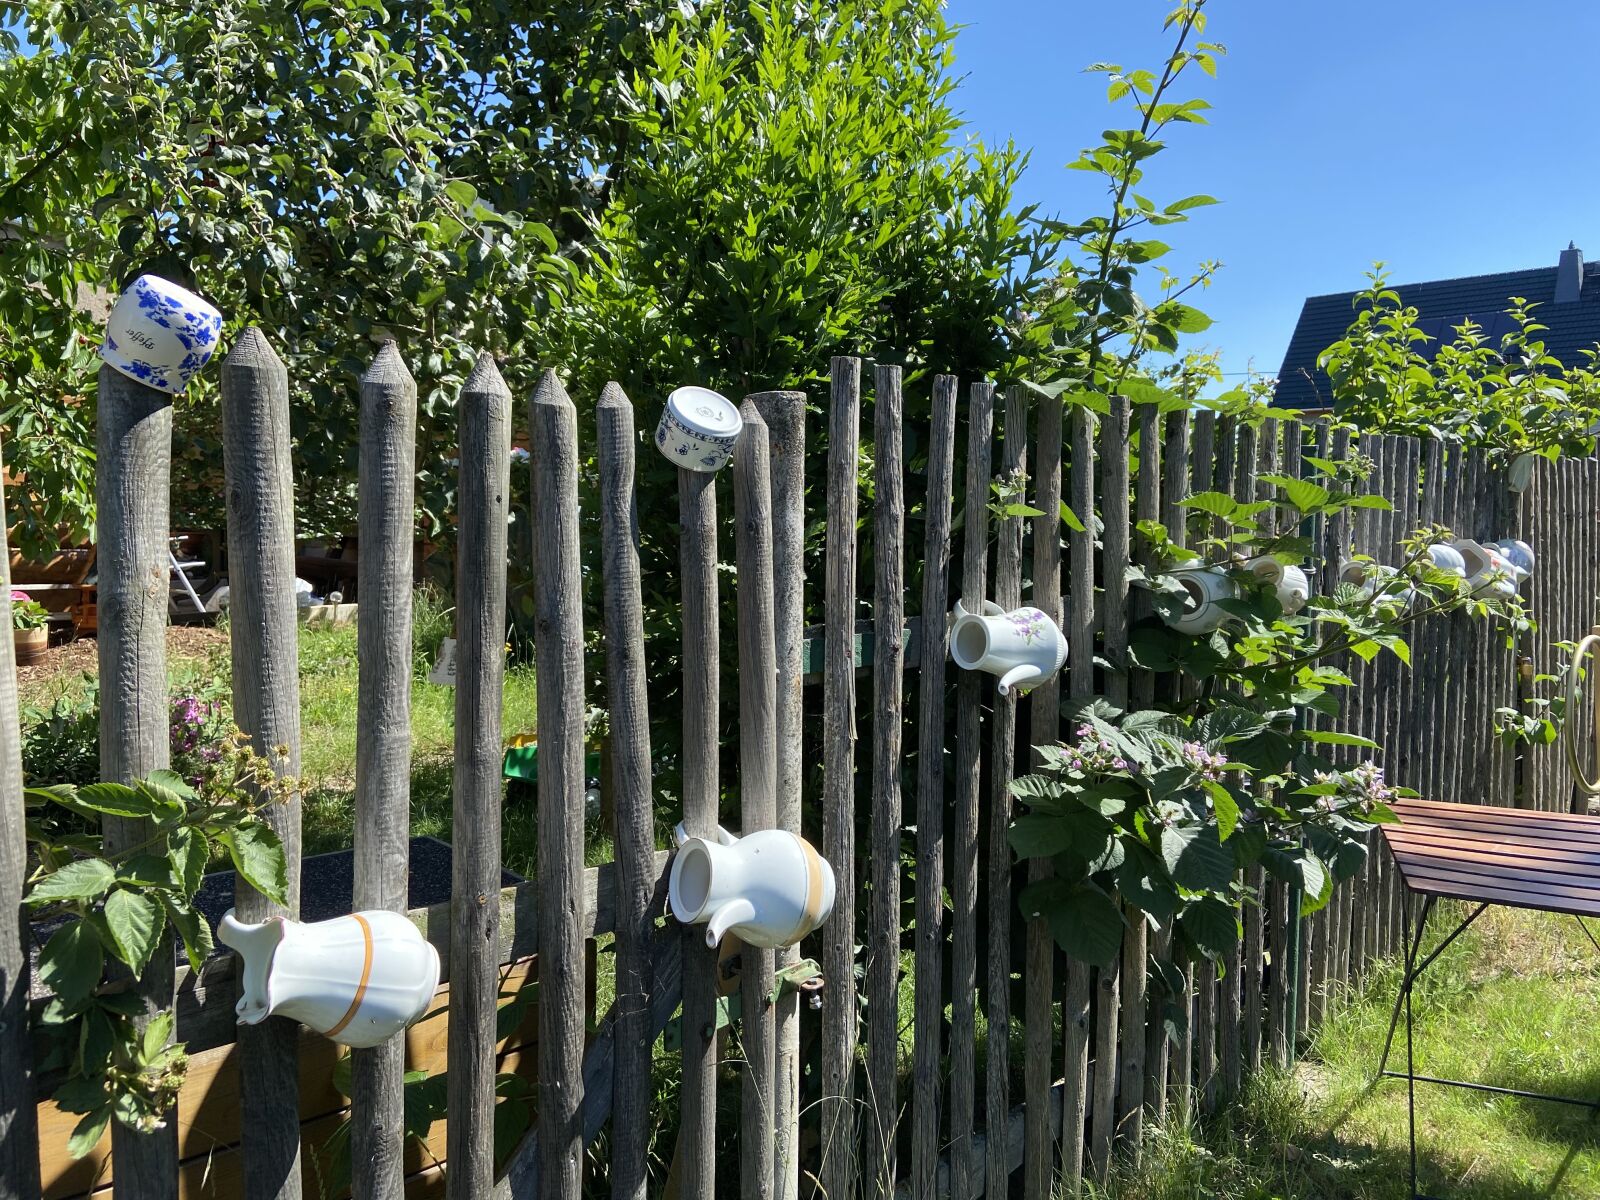 Apple iPhone 11 sample photo. Garden fence, deco, garden photography